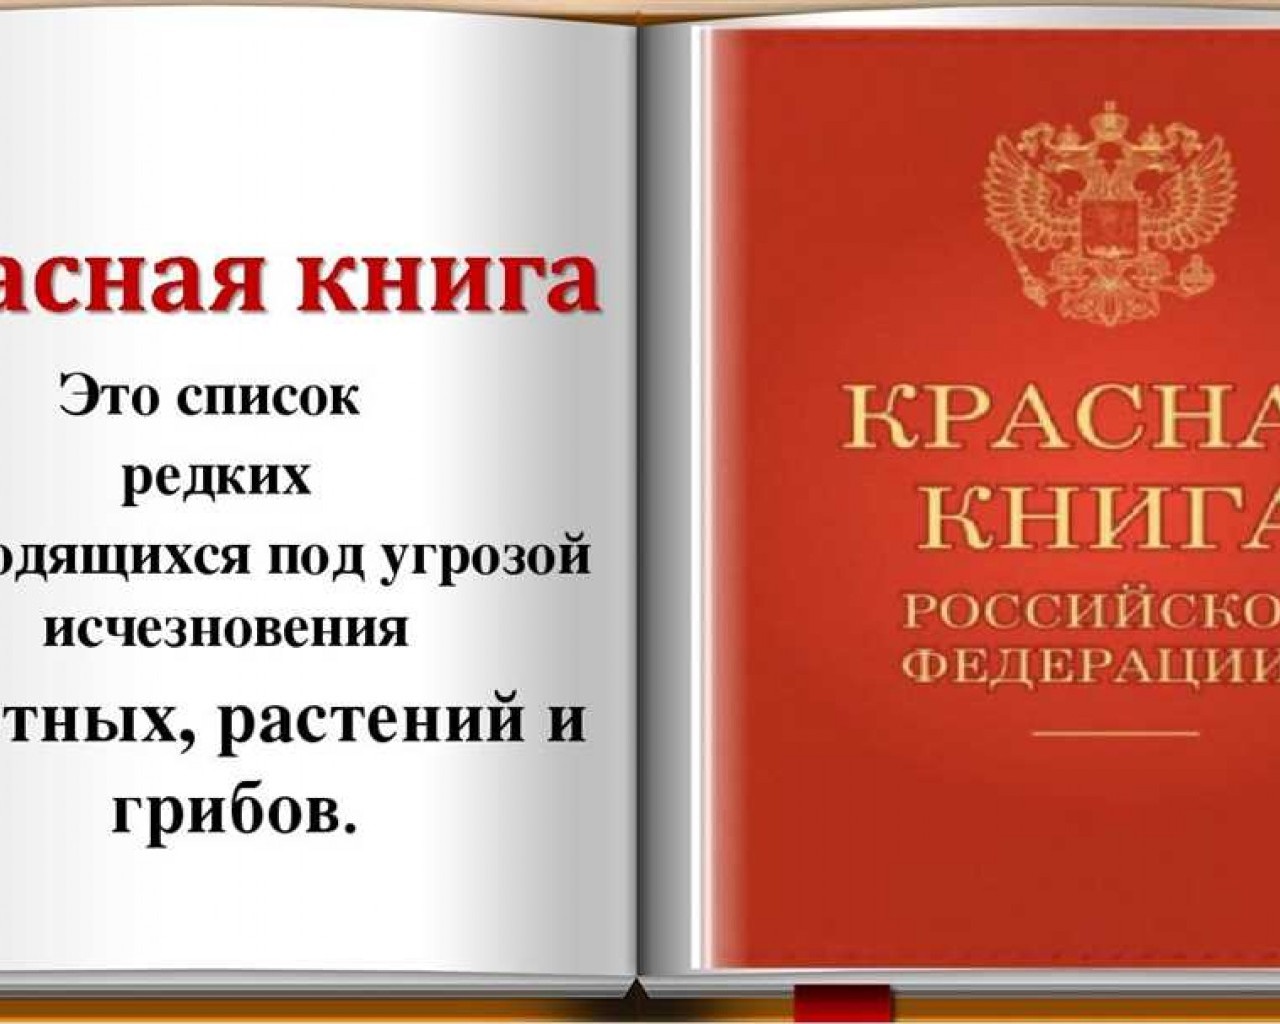 Как узнать о редких и исчезающих видов животных и растений по Красной книге России?